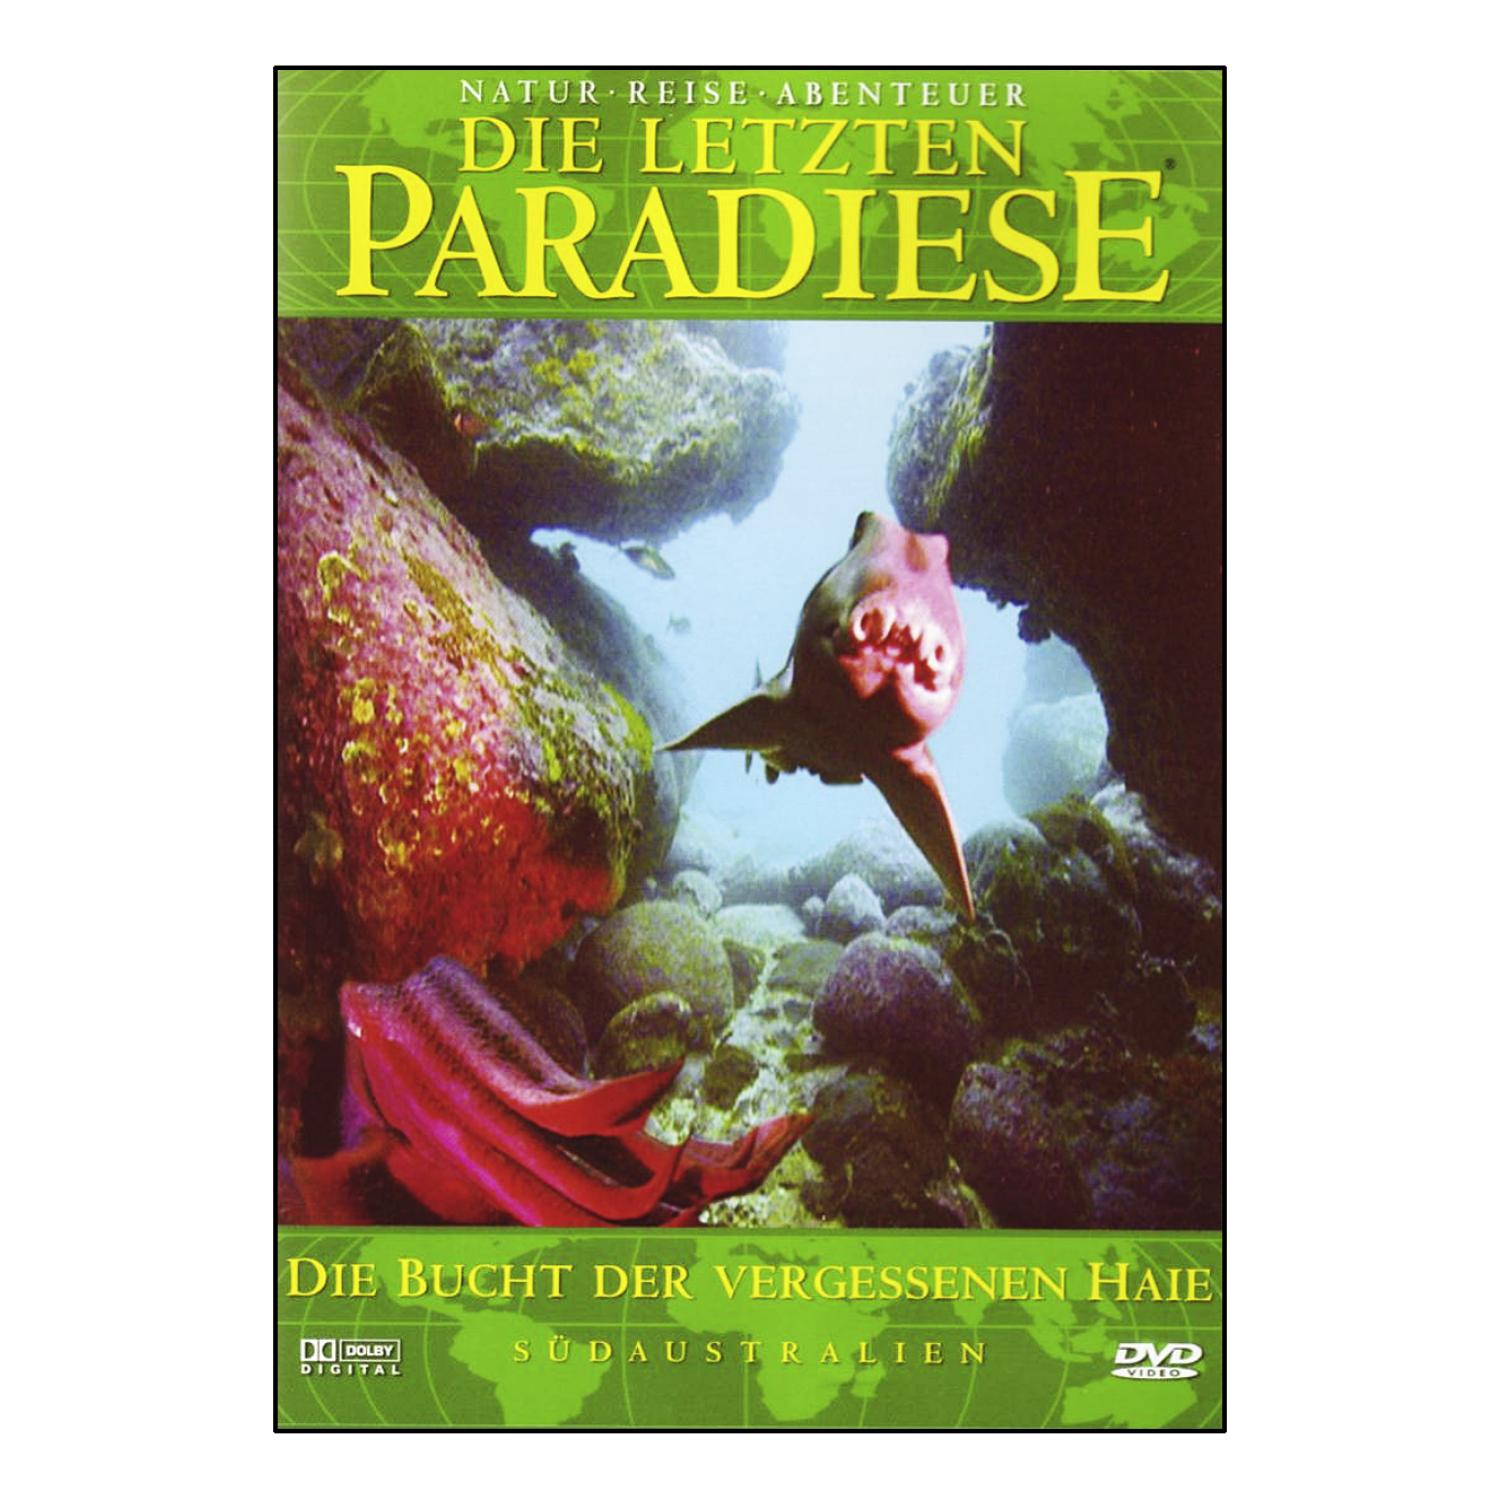 Die letzten Haie Bucht vergessenen der Paradiese Die - DVD